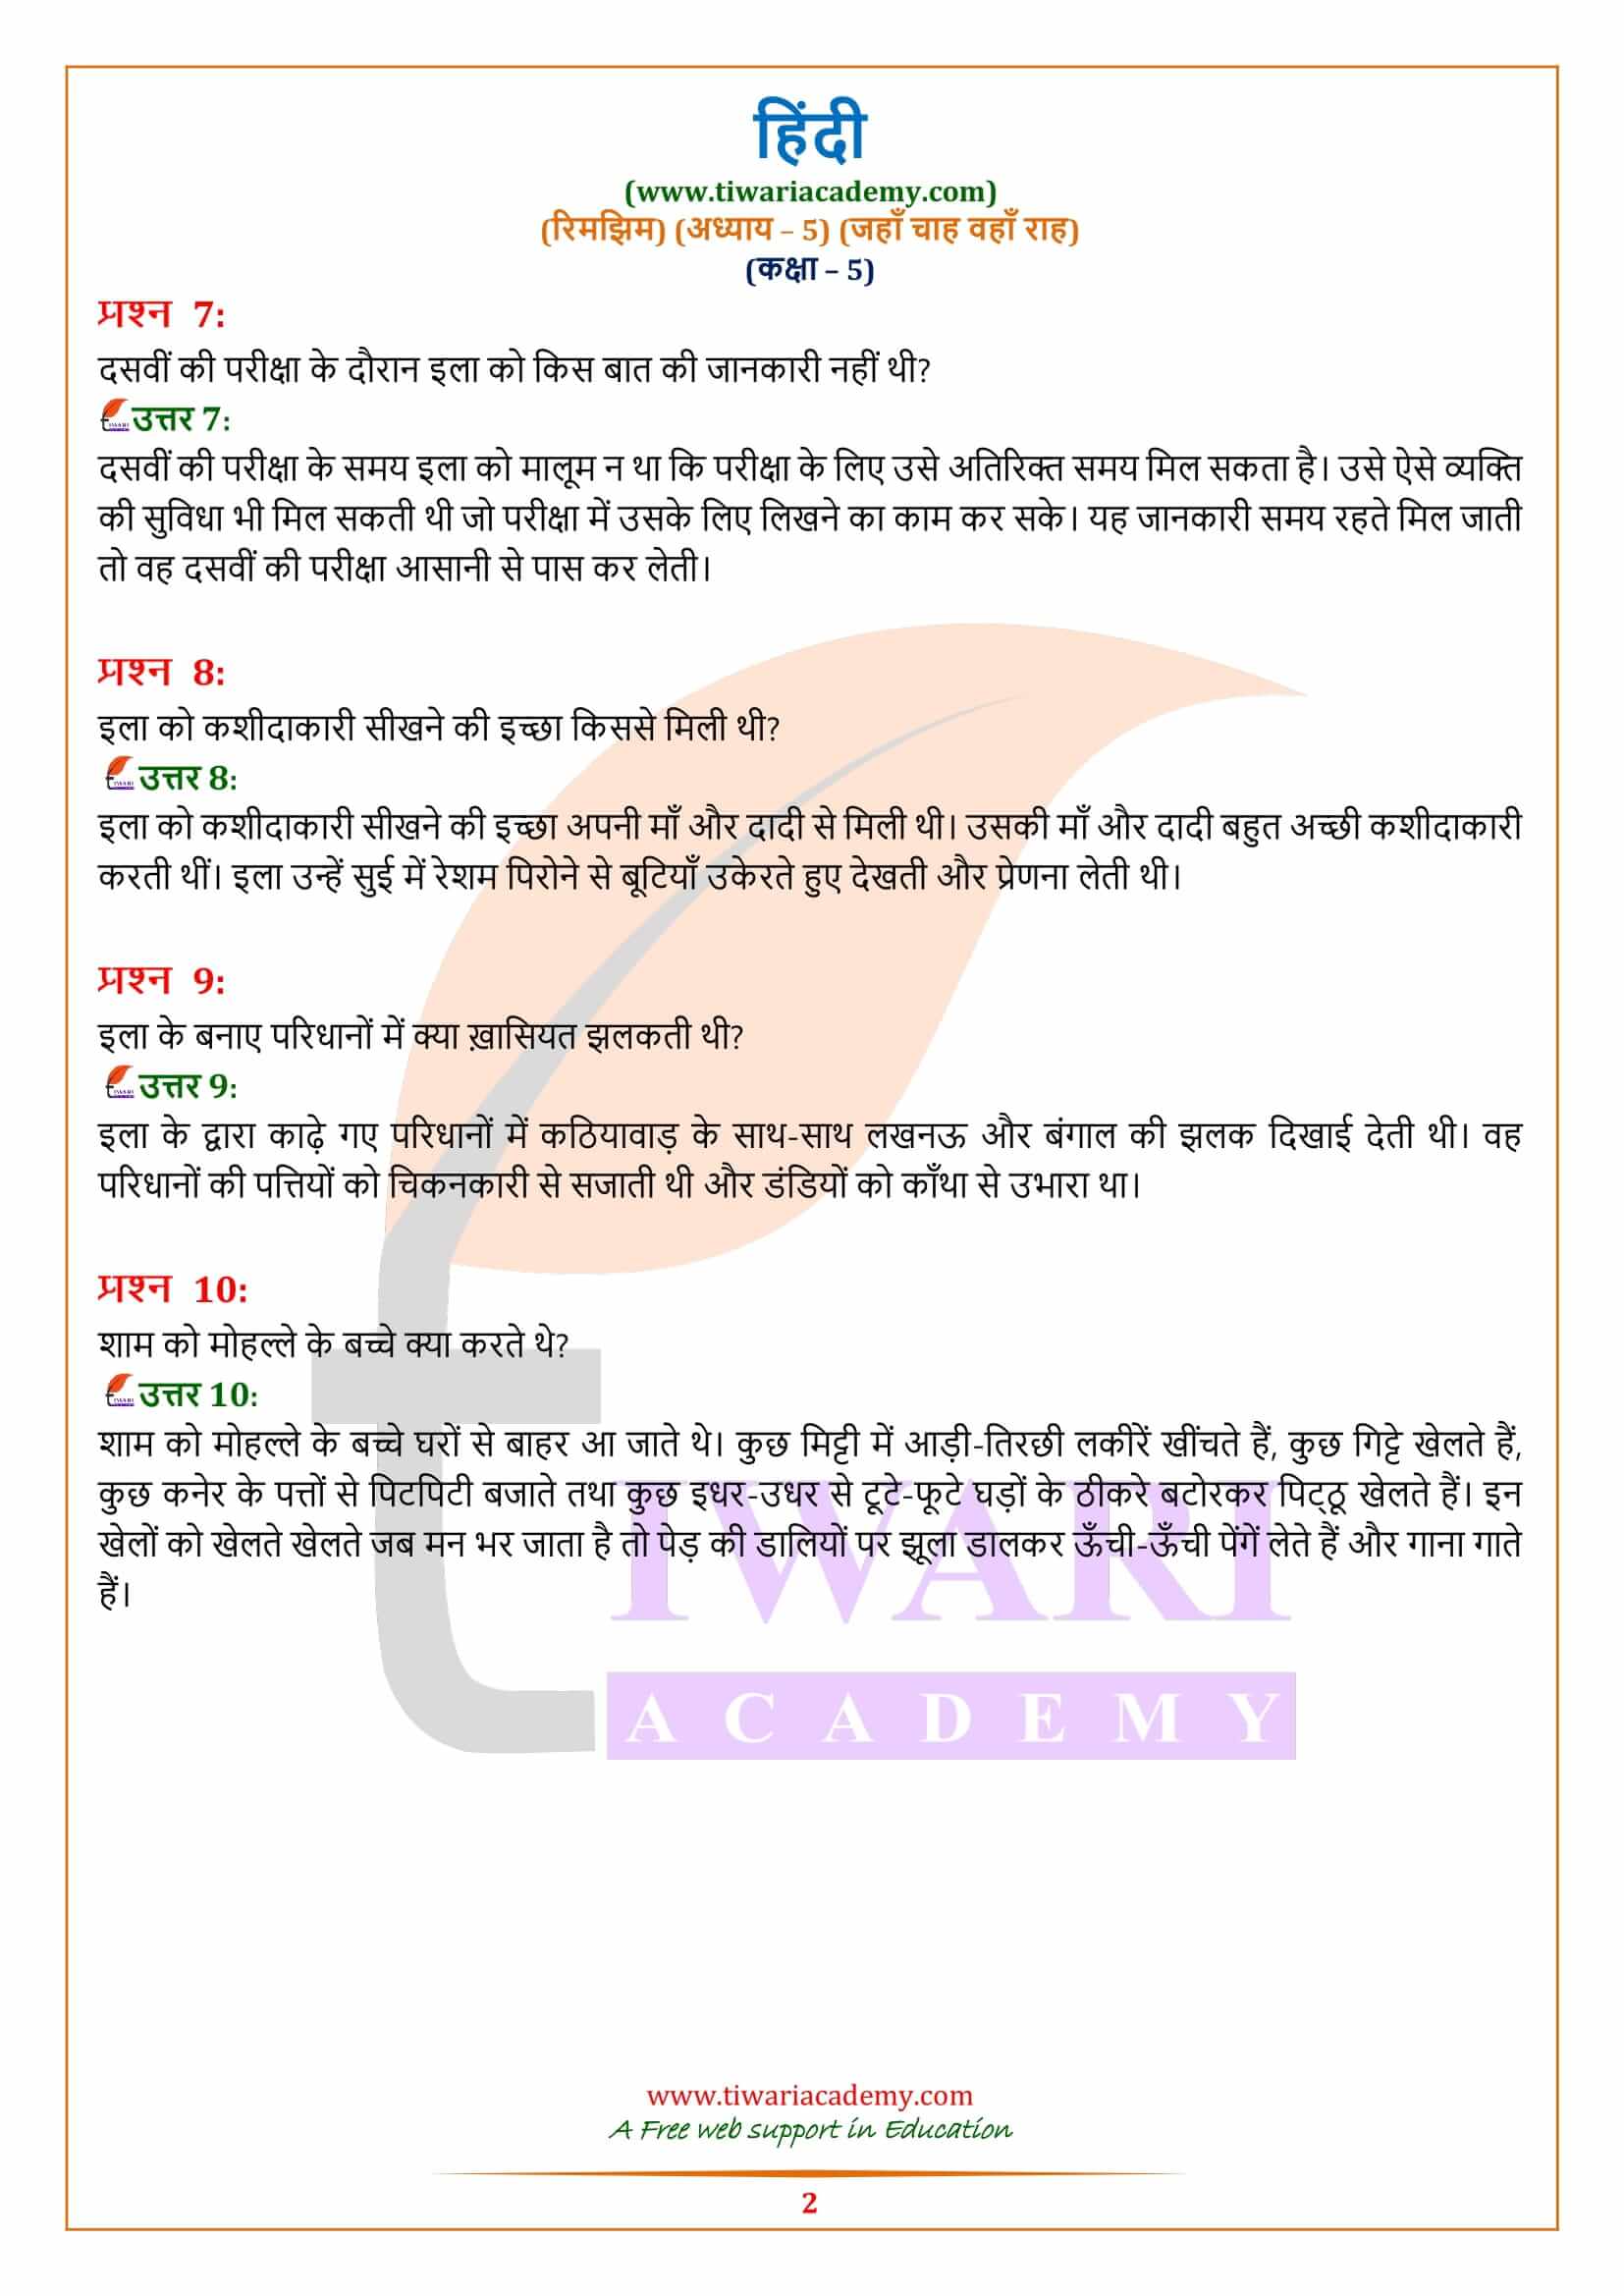 कक्षा 5 हिंदी अध्याय 5 के प्रश्न उत्तर